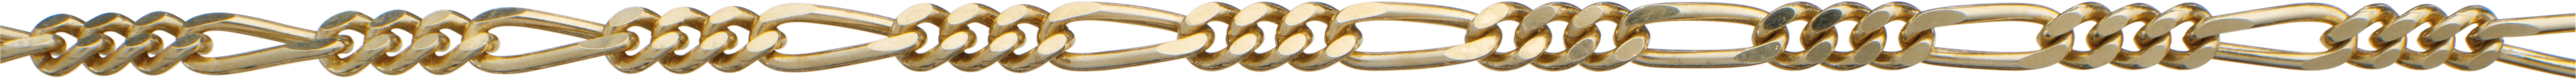 figaro ketting goud 585/-gg 2,65mm, draad dikte 0,80mm